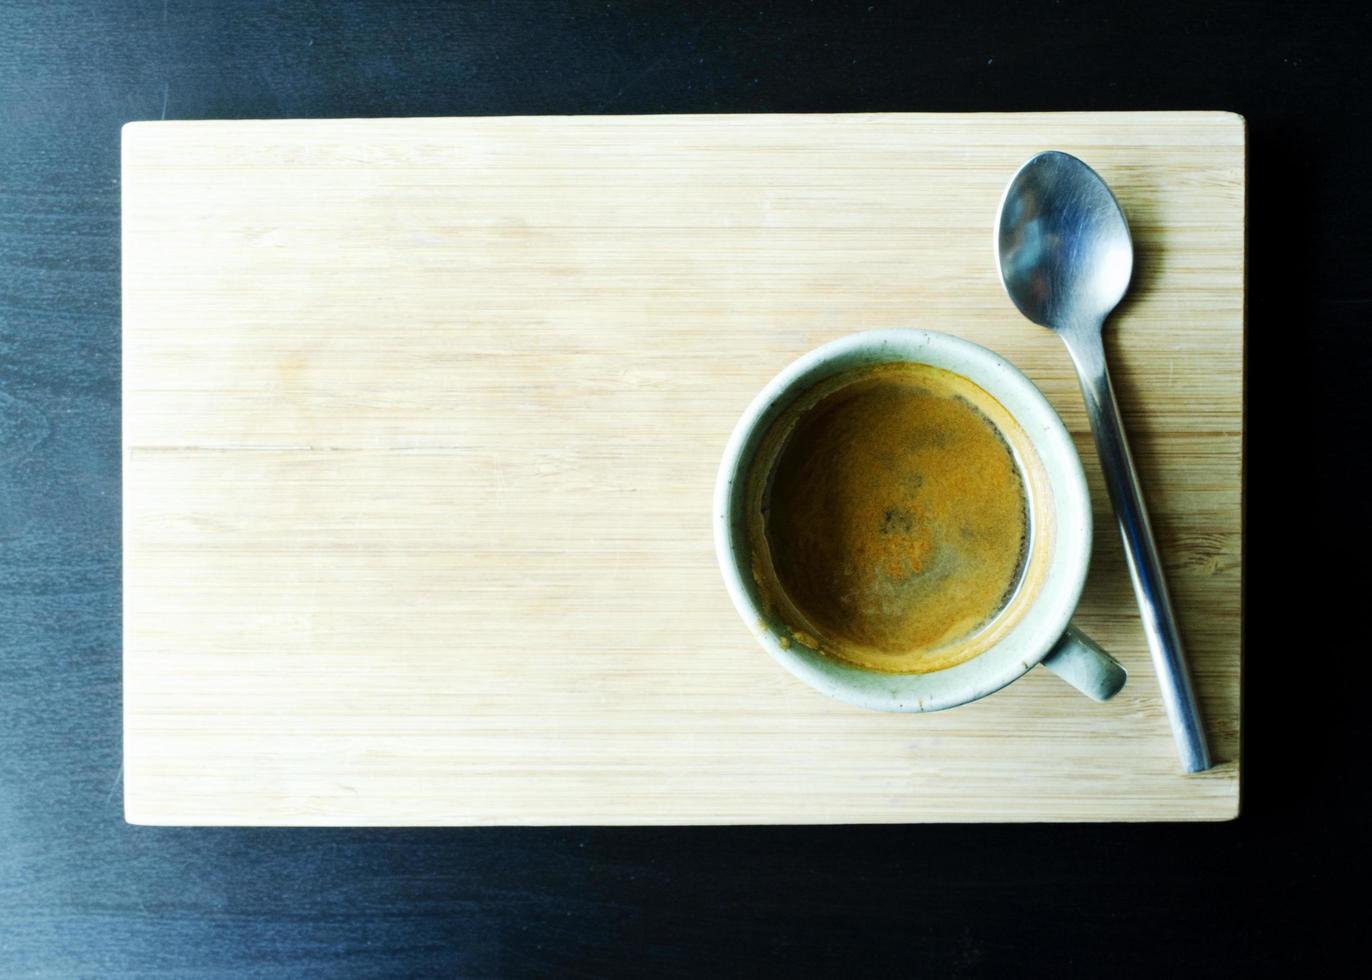 Tazas de café caliente y cuchara sobre fondos de placa de madera arriba foto